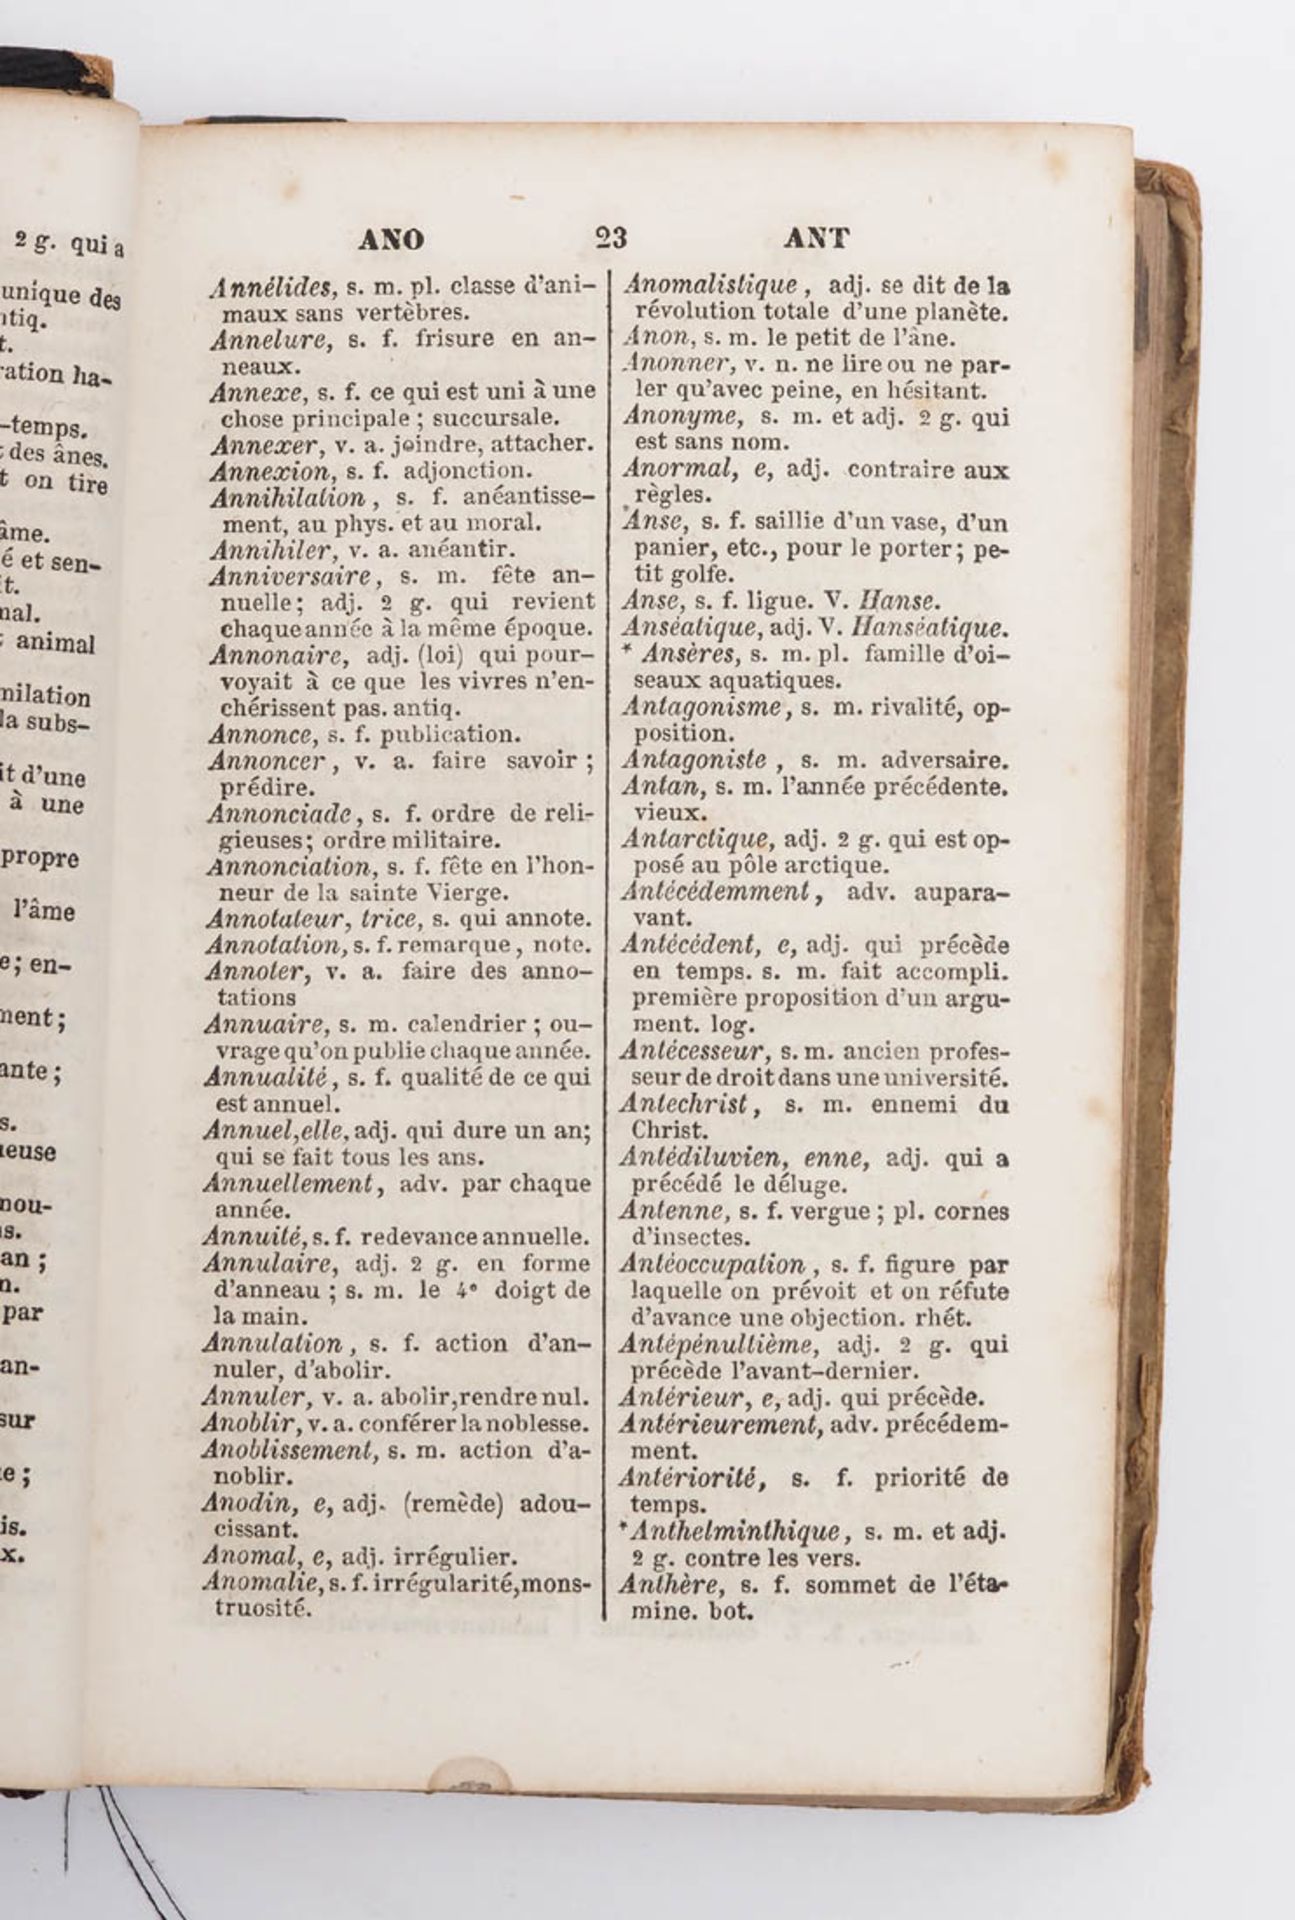 Französisches Wörterbuch Leroy und Bénard: Dictionnaire de la langue francaise, Belin, Paris 1860. - Bild 3 aus 3